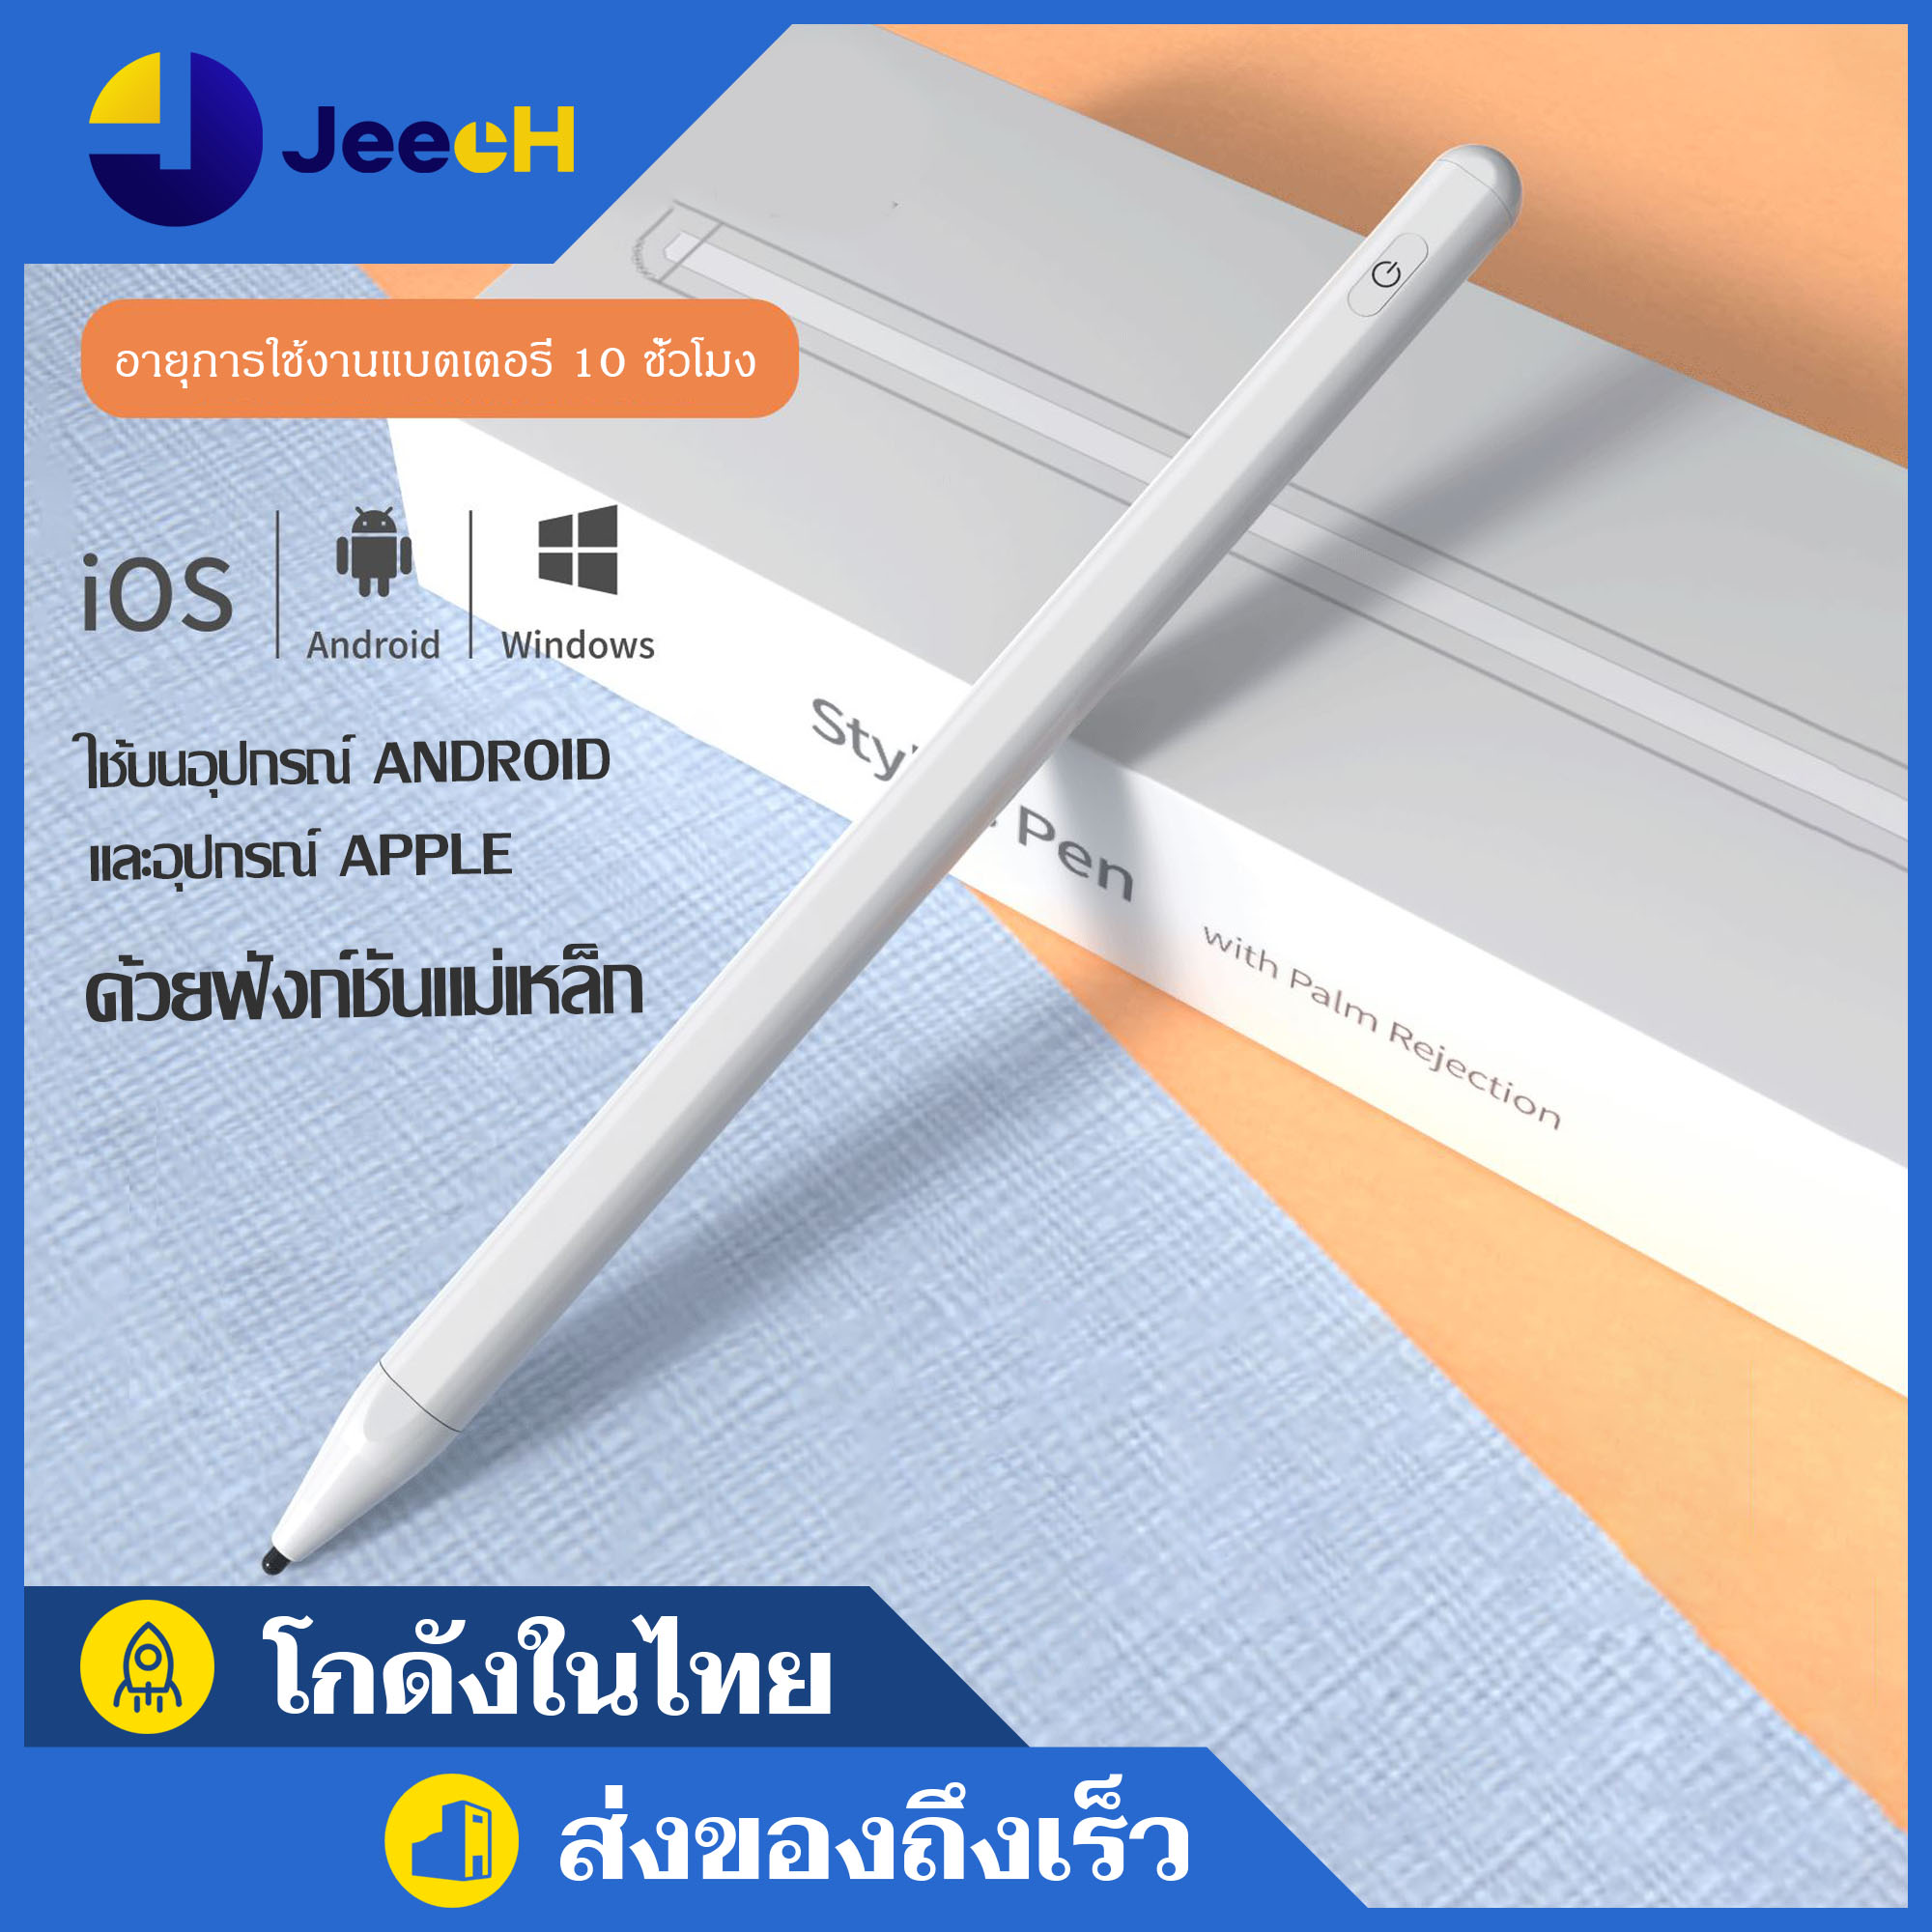 ปากกาไอแพด ปากกาสไตลัส stylus pen ปากกาหน้าจอสัมผัส สำหรับ iPad Gen 7 10.2 / Pro 11 12.9 2018 2020 Air 3 10.5 Mini 5 2019 / D-Phone